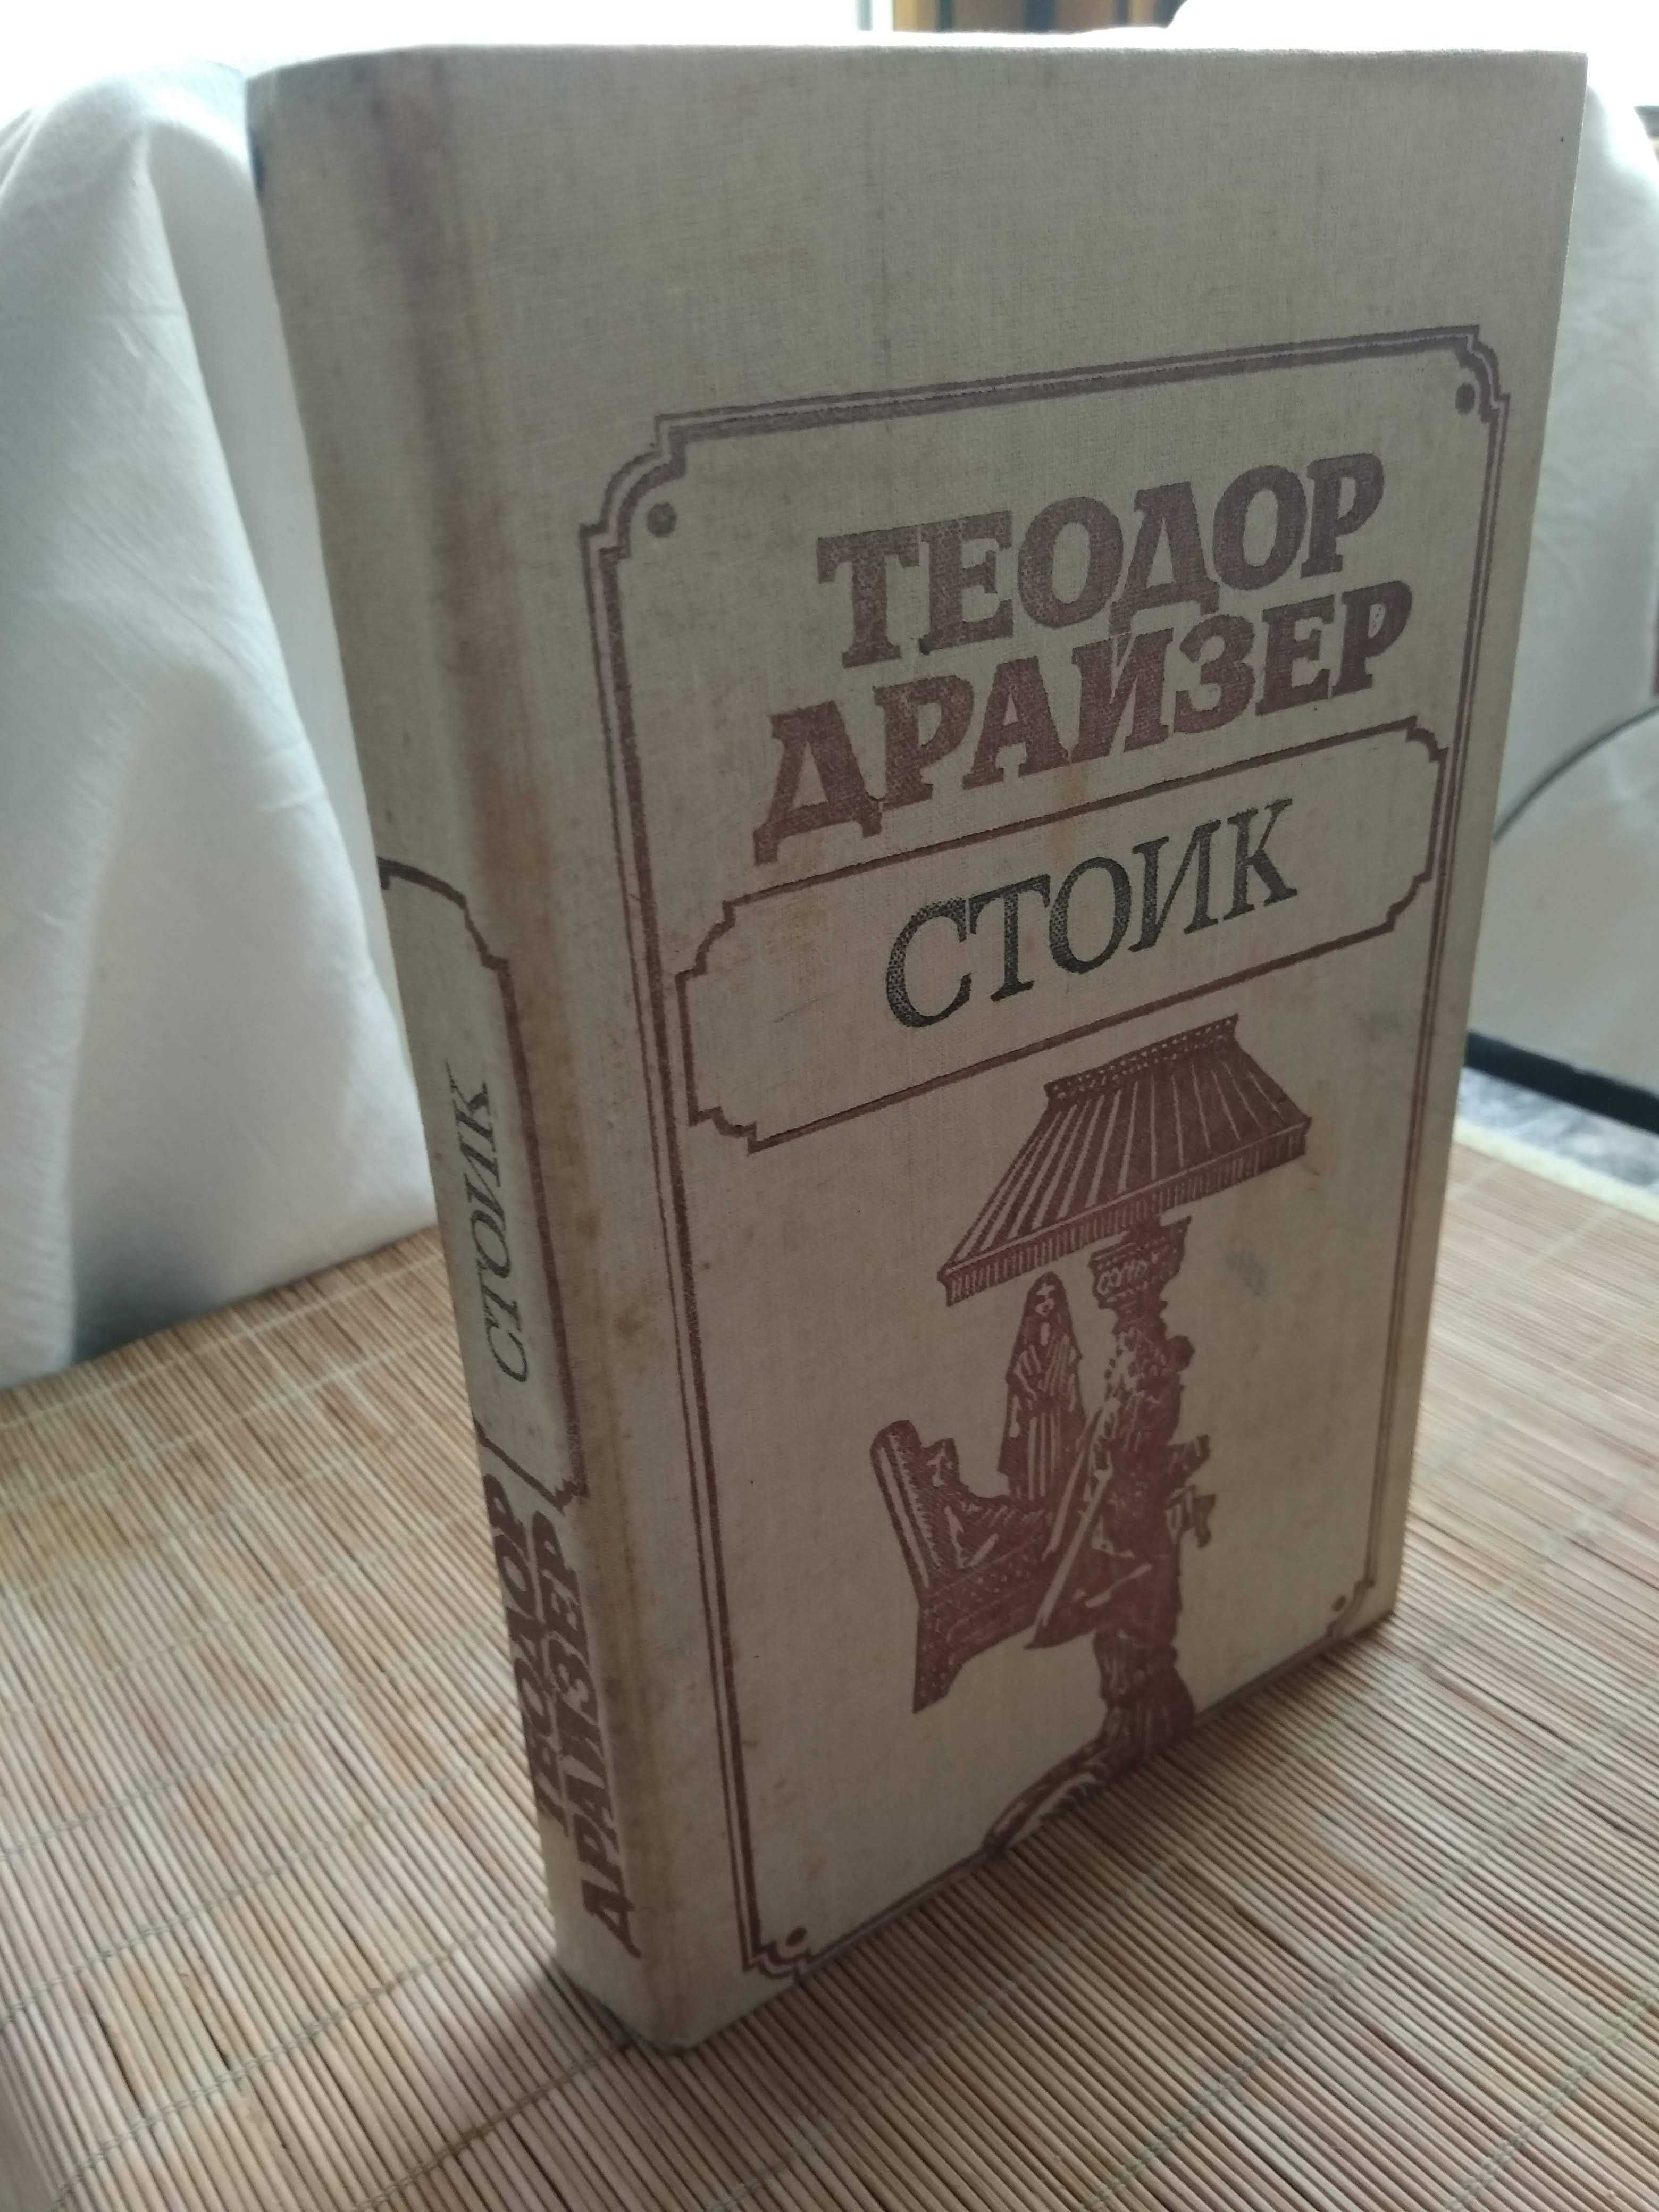 Теодор Драйзер "Стоик", 1989 г редкое издание